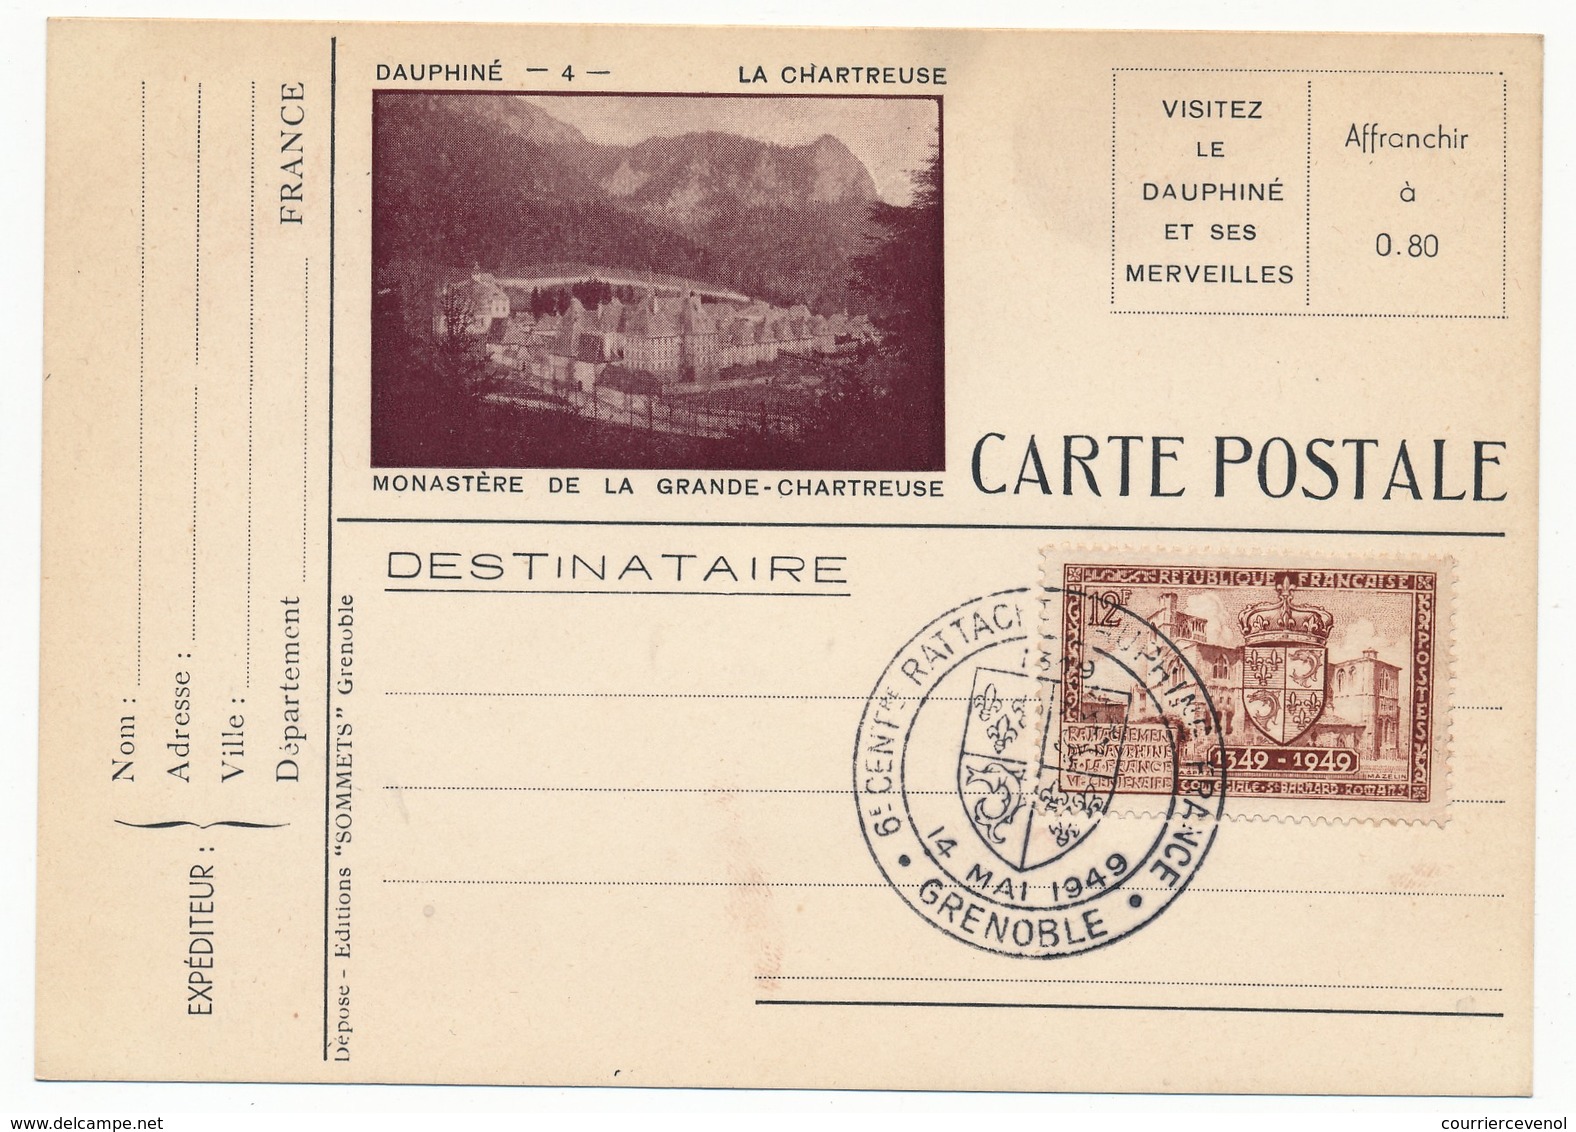 FRANCE - 8eme Centenaire Du Rattachement Du Dauphiné à La France -14 Mai 1949 - PREMIER JOUR Du Timbre - Cachets Commémoratifs